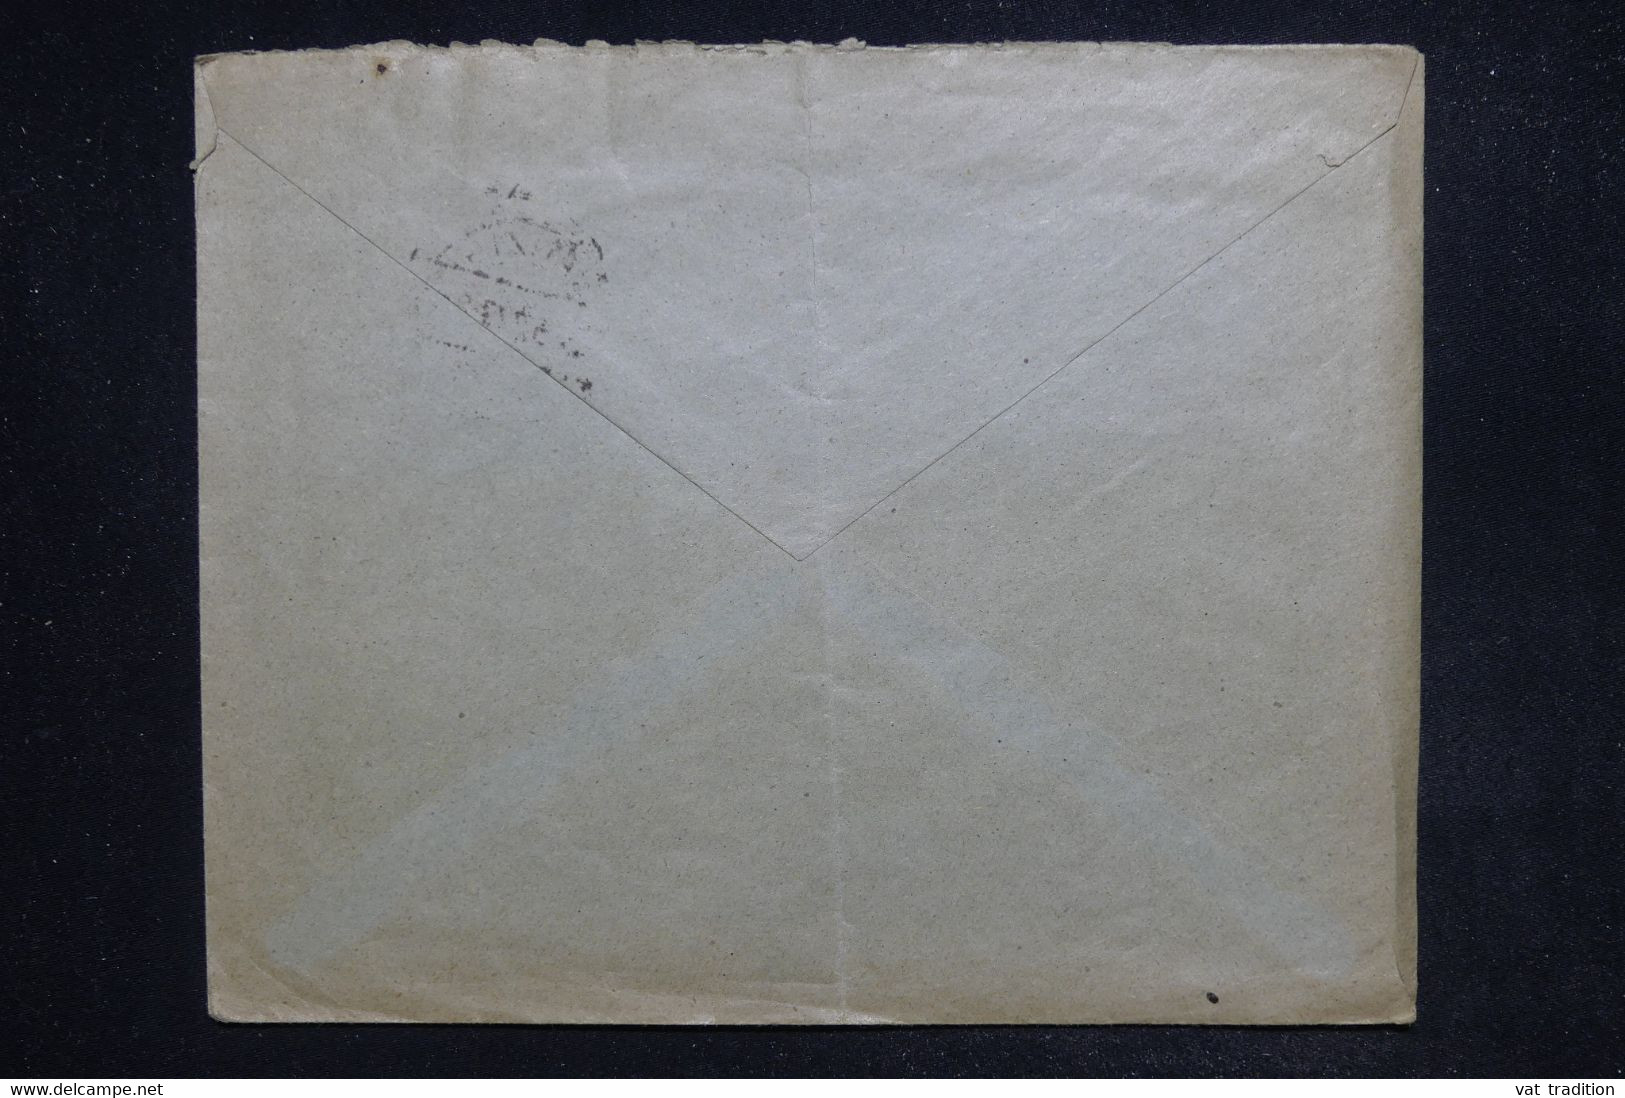 ALLEMAGNE - Enveloppe Commerciale De Dantzig En 1922 - L 122329 - Briefe U. Dokumente